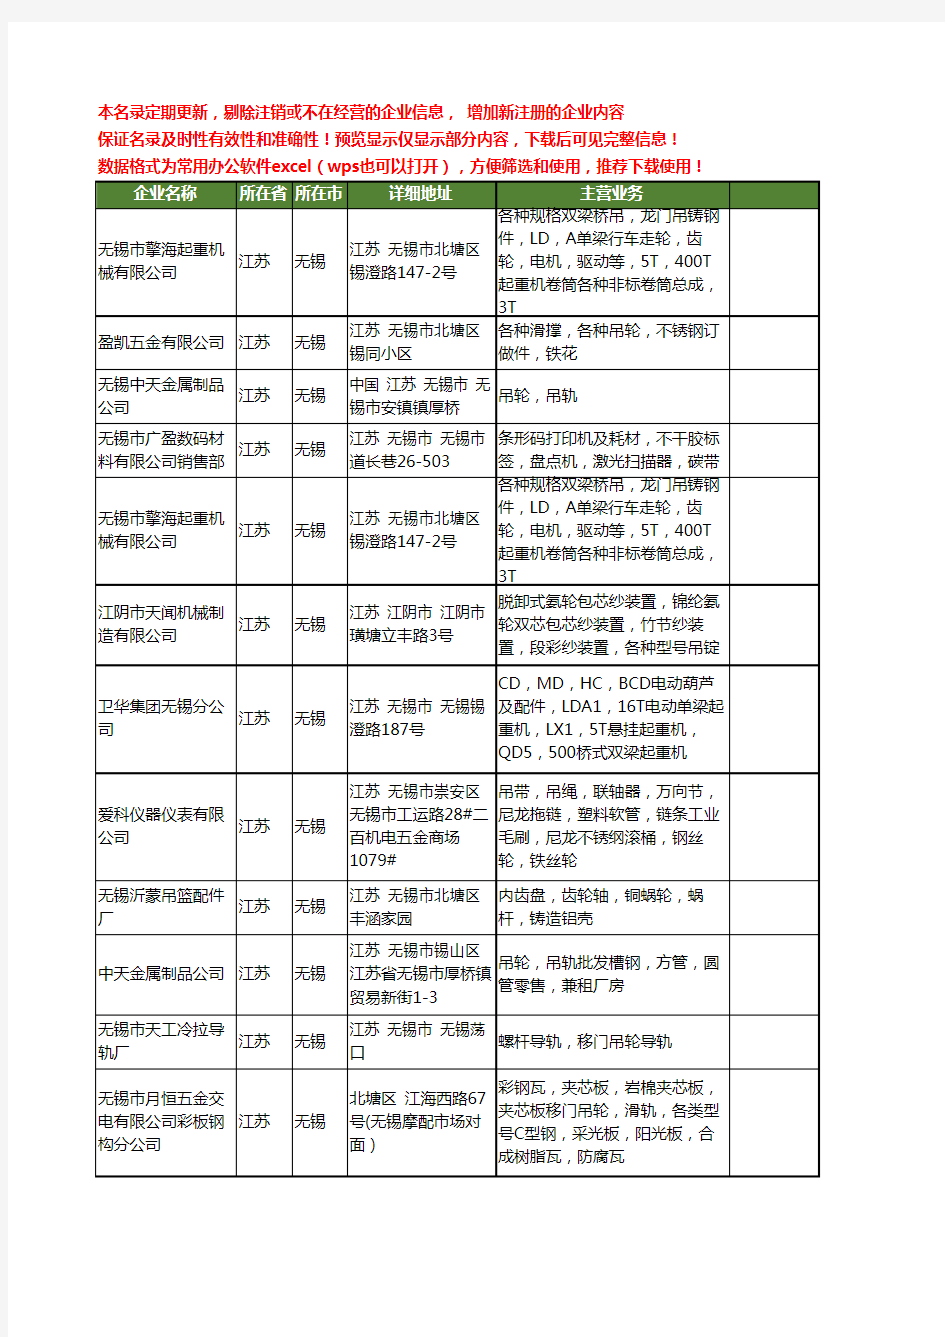 新版江苏省无锡吊轮工商企业公司商家名录名单联系方式大全12家